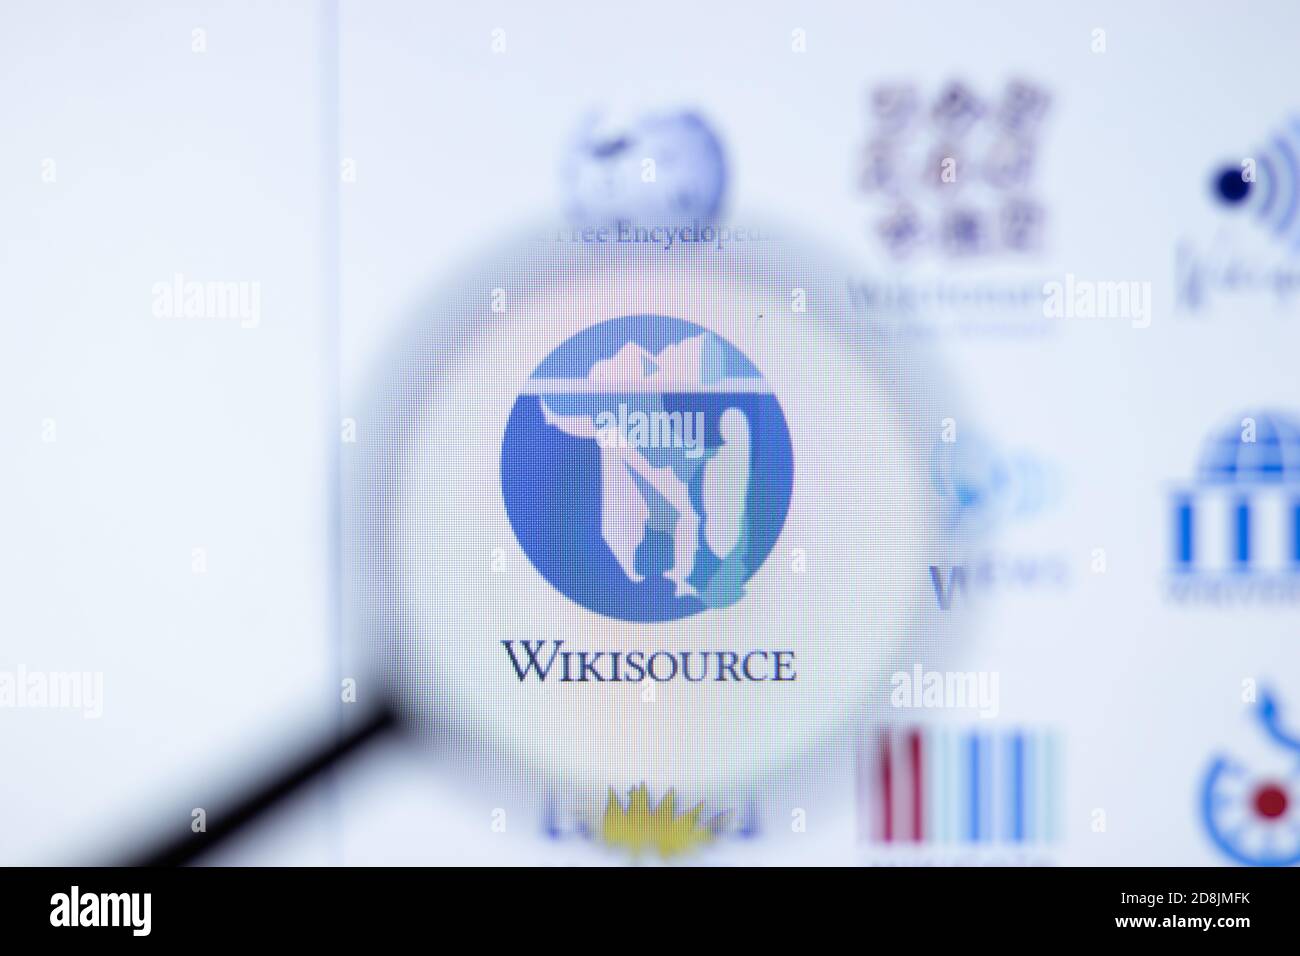 New York, USA - 29. September 2020: Wikisource Firmenwebsite mit Logo aus der Nähe, illustrative Editorial Stockfoto